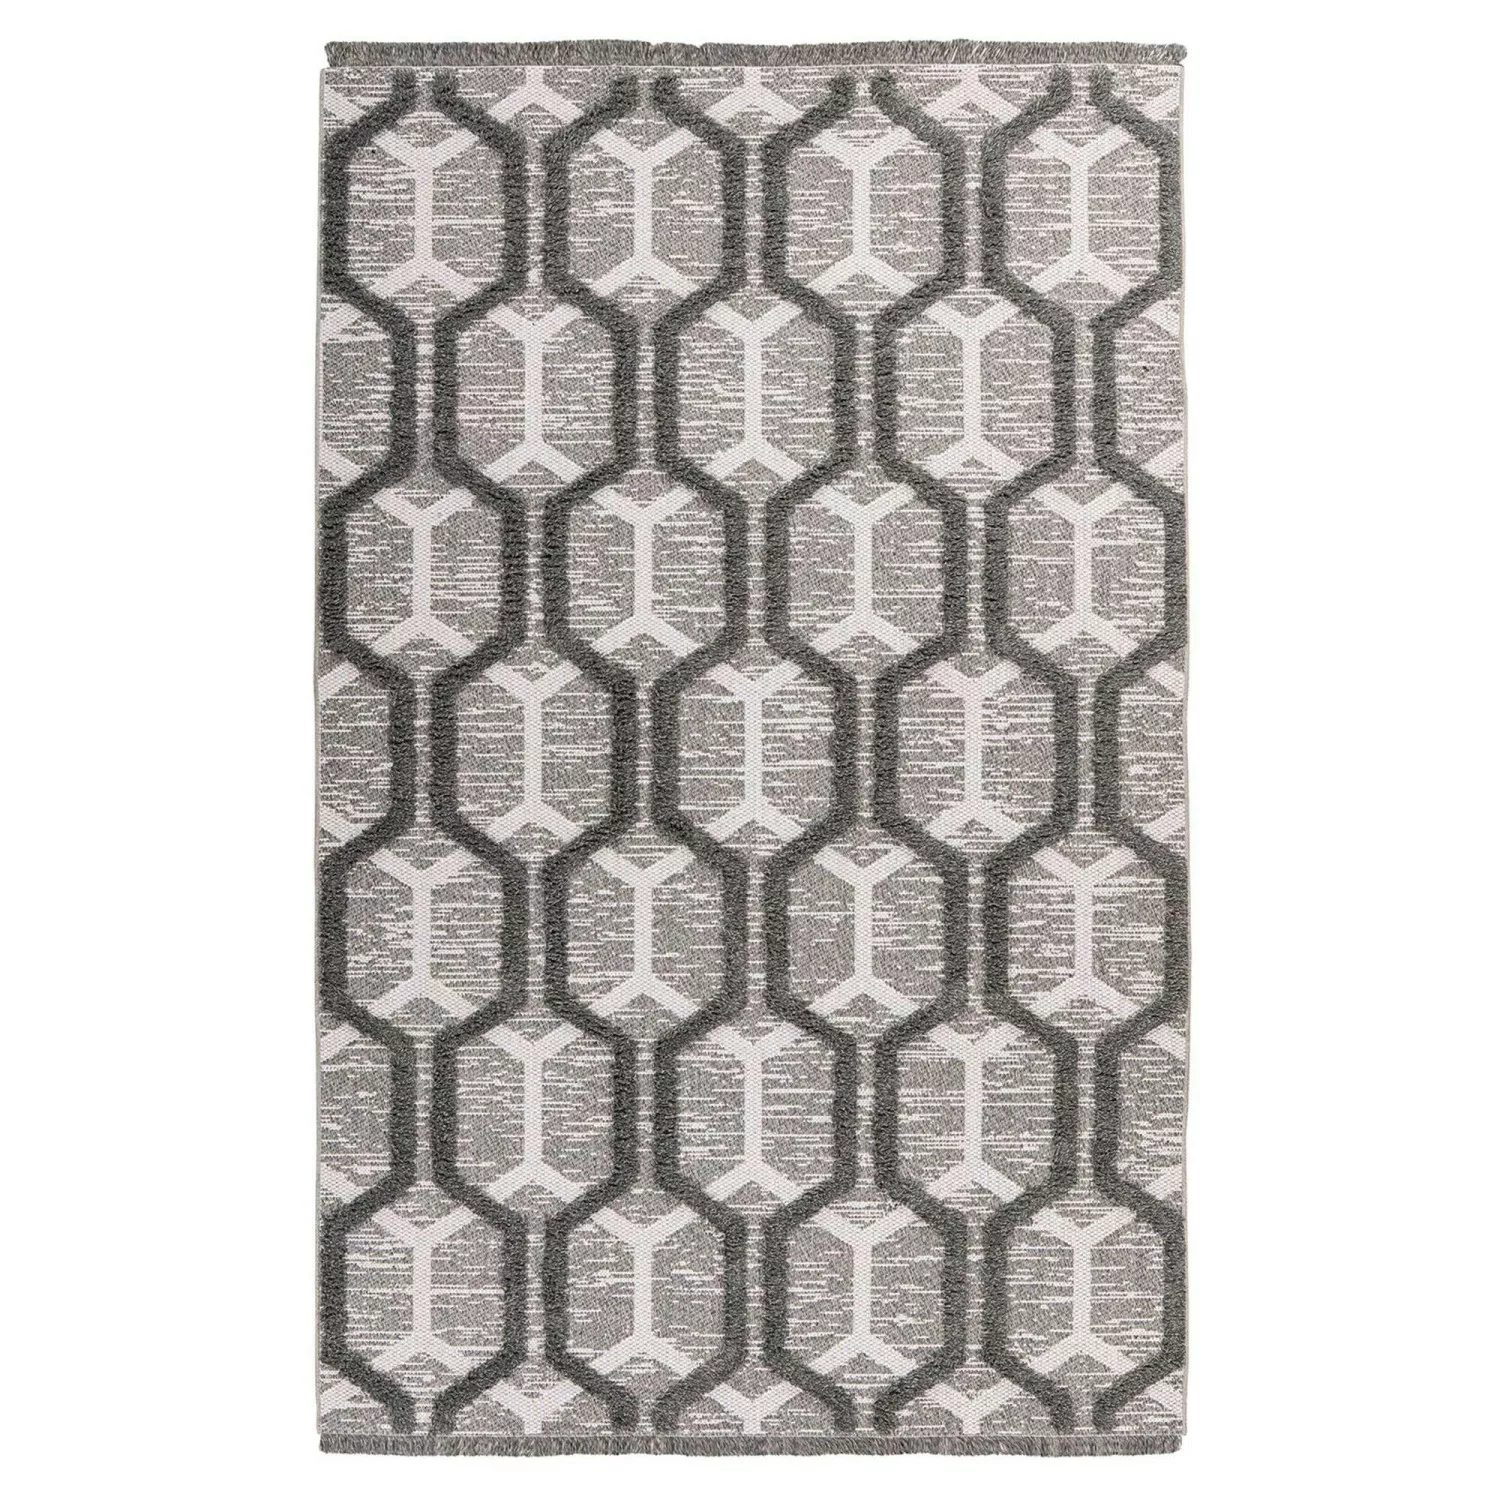 MeGusta Kurzflor Teppich Retro Grau Recyceltes Material 160 x 230 cm günstig online kaufen